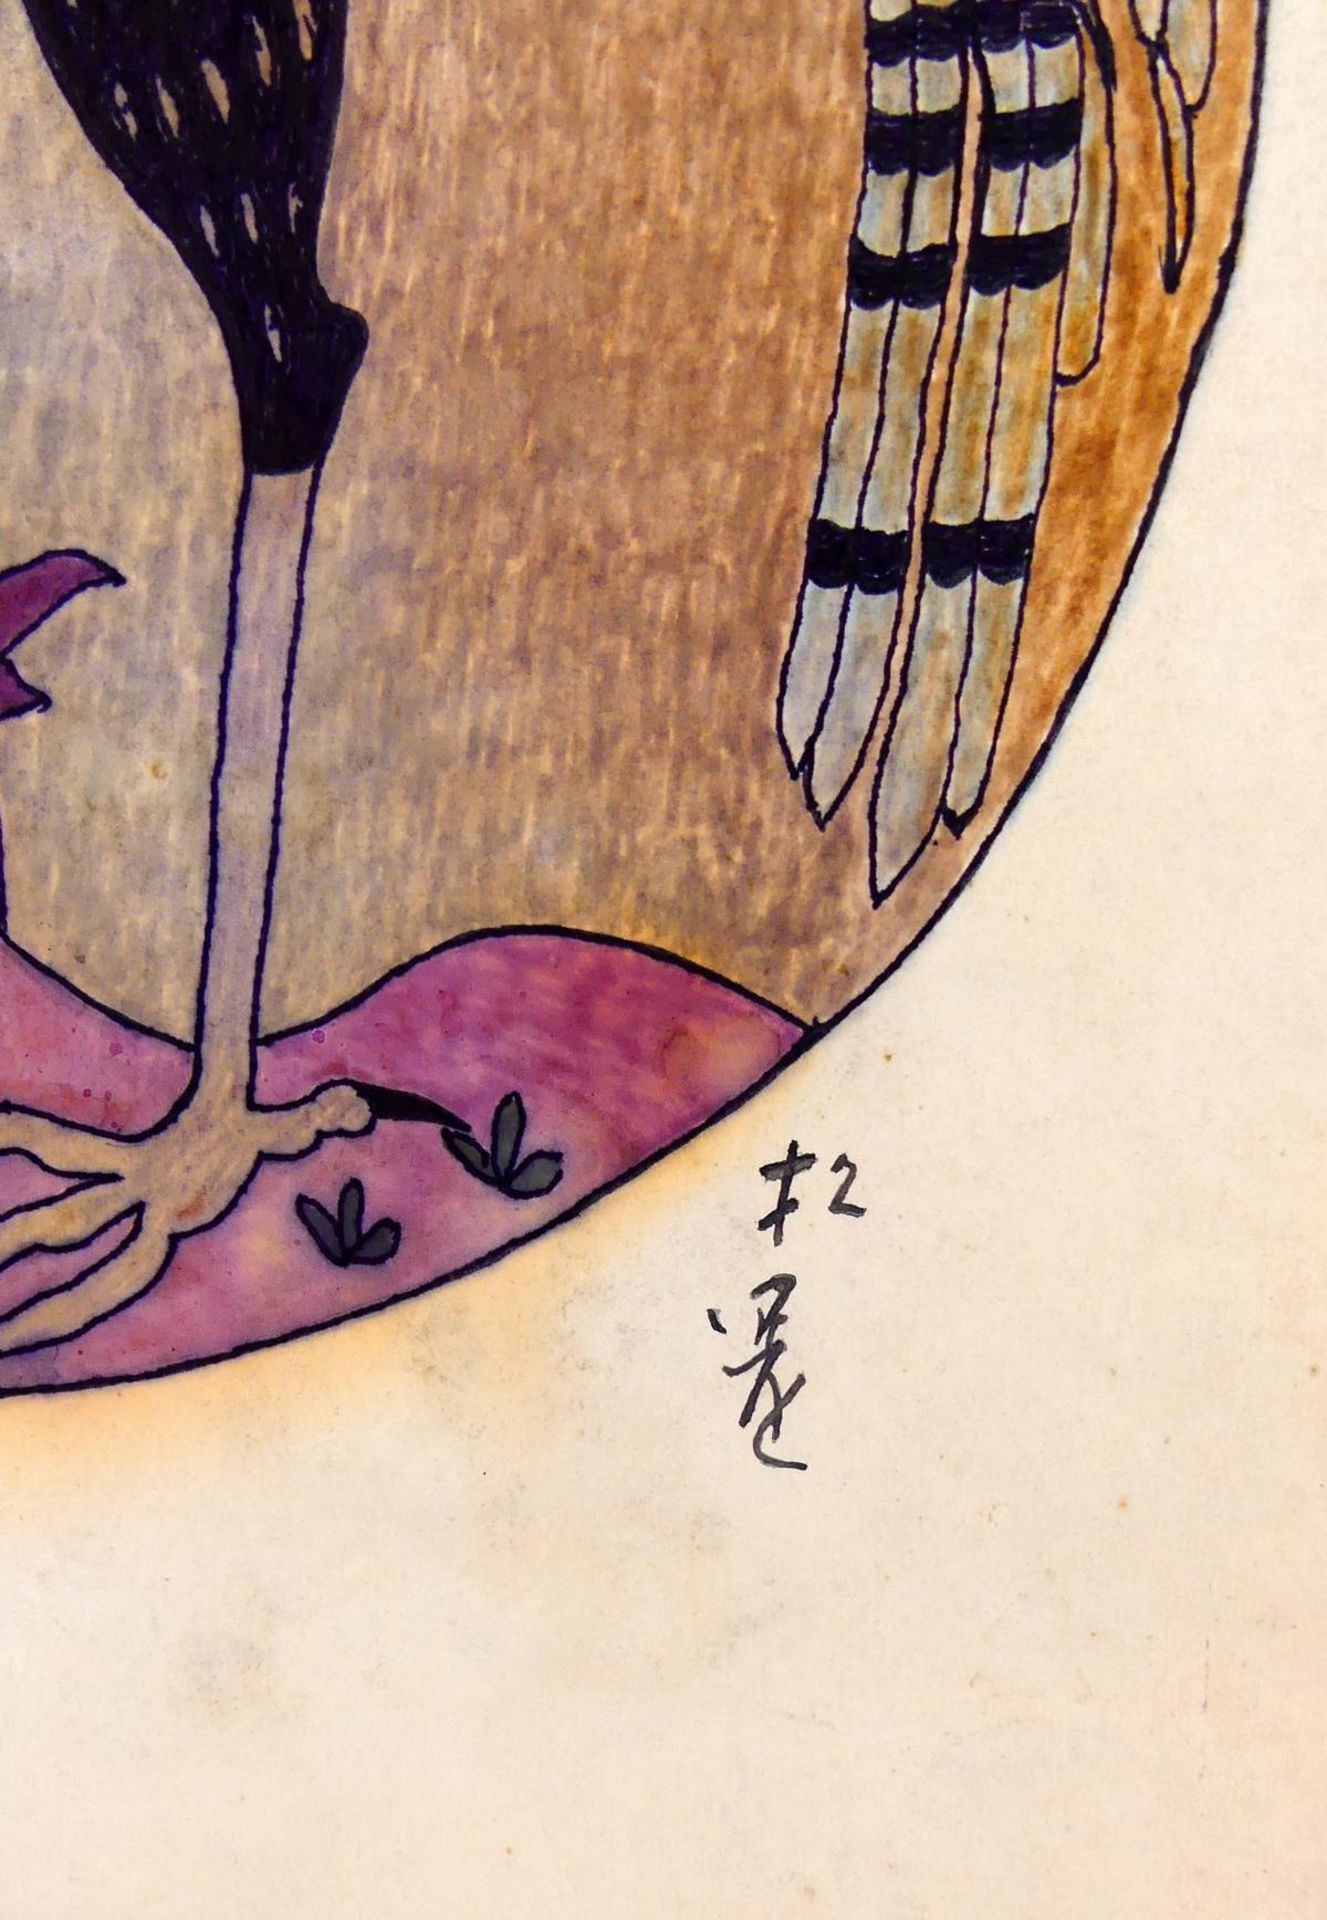 Japanische Malerei, "Greifvogel mit Wurm", ca. 43 x 30 cm - Image 2 of 2